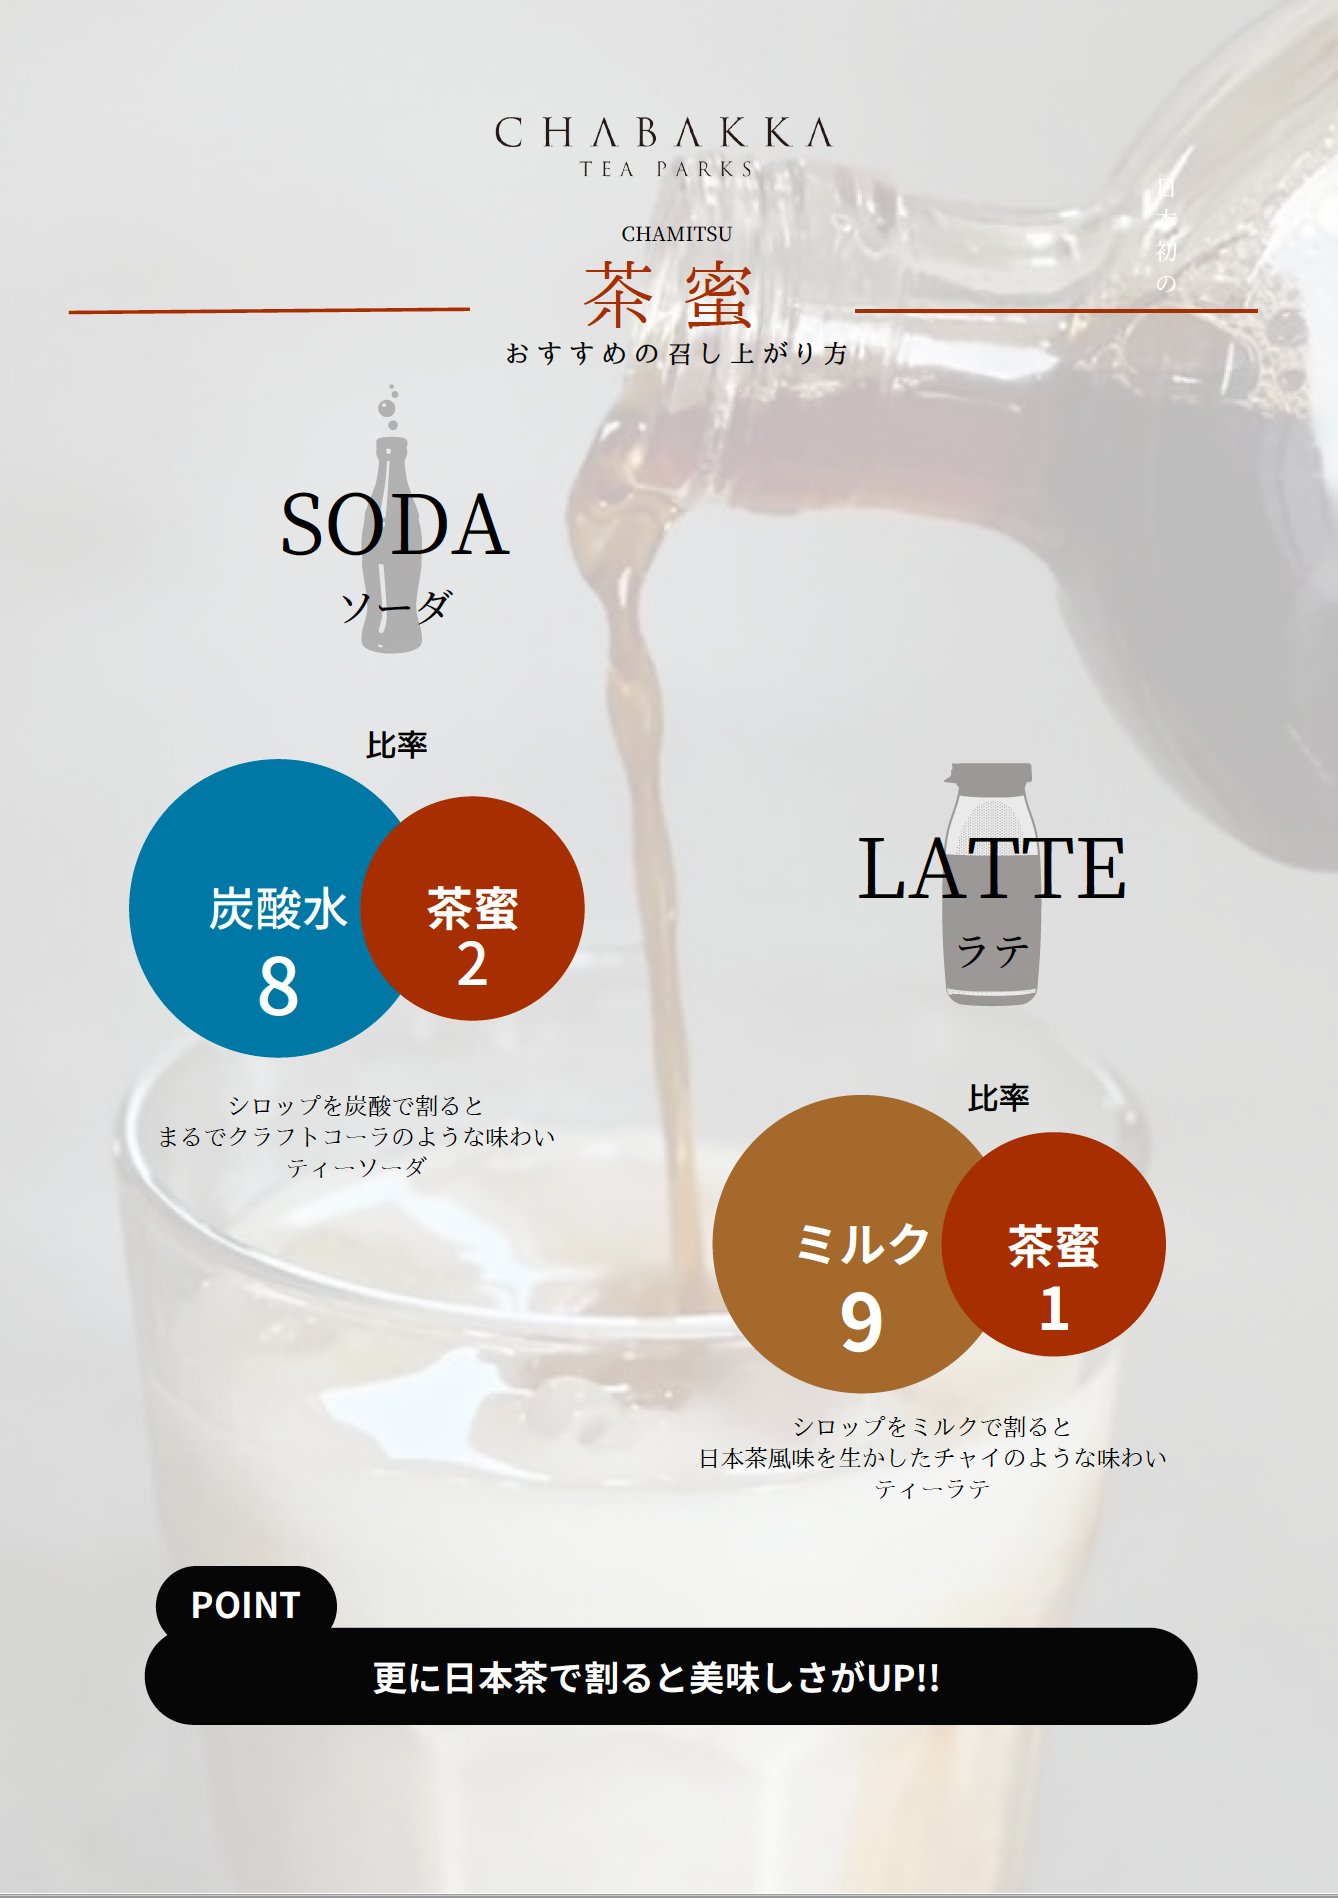 3種から選べる日本茶シロップ